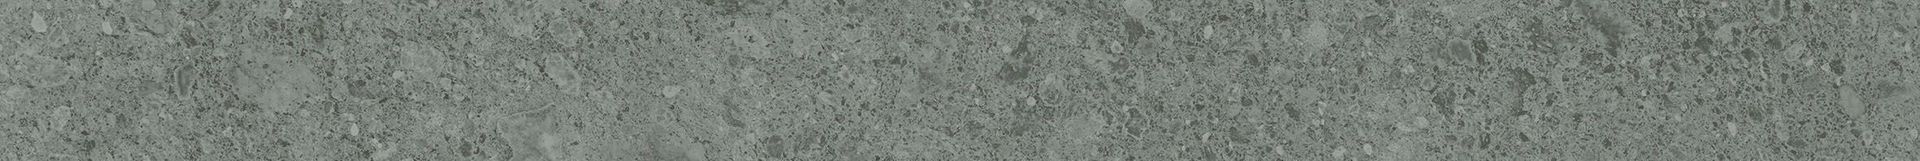 Плитка из керамогранита матовая Italon Дженезис 7.2x60 серый (610130002154) плитка из керамогранита матовая italon дженезис 7 2x60 серый 610130002154